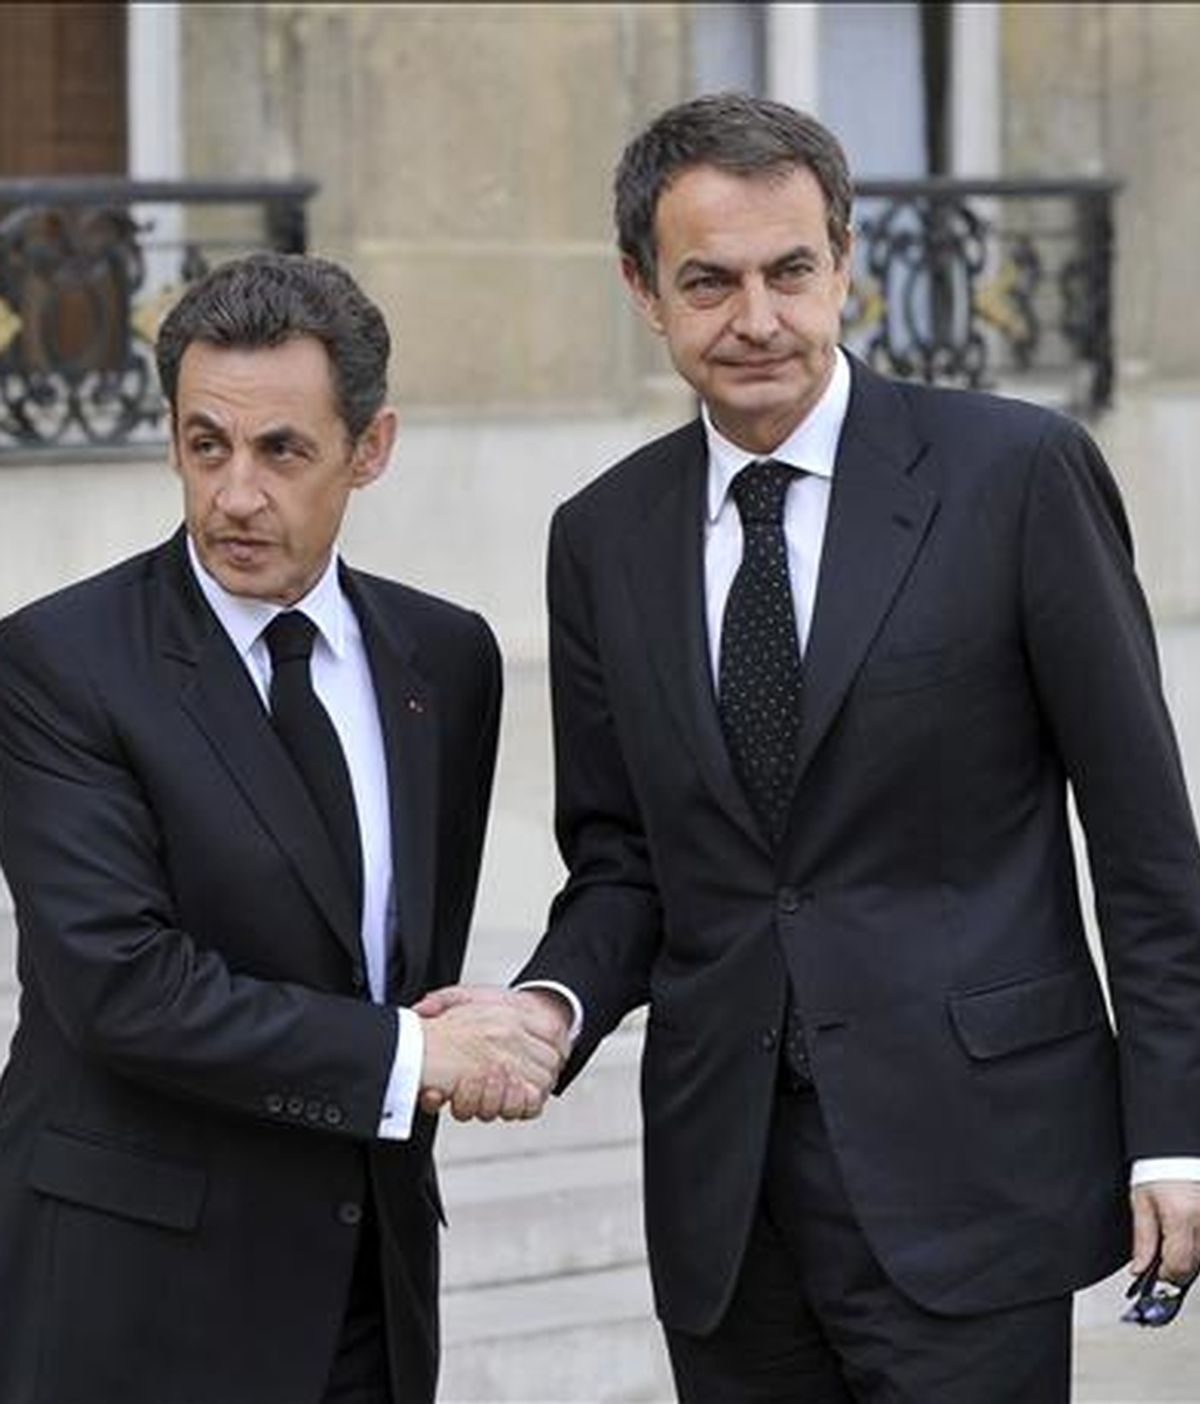 El presidente francés, Nicolas Sarkozy (i), estrecha la mano del jefe del Ejecutivo español, José Luis Rodríguez Zapatero, a su llegada a una reunión en el Palacio Elíseo, en París (Francia). EFE/Archivo